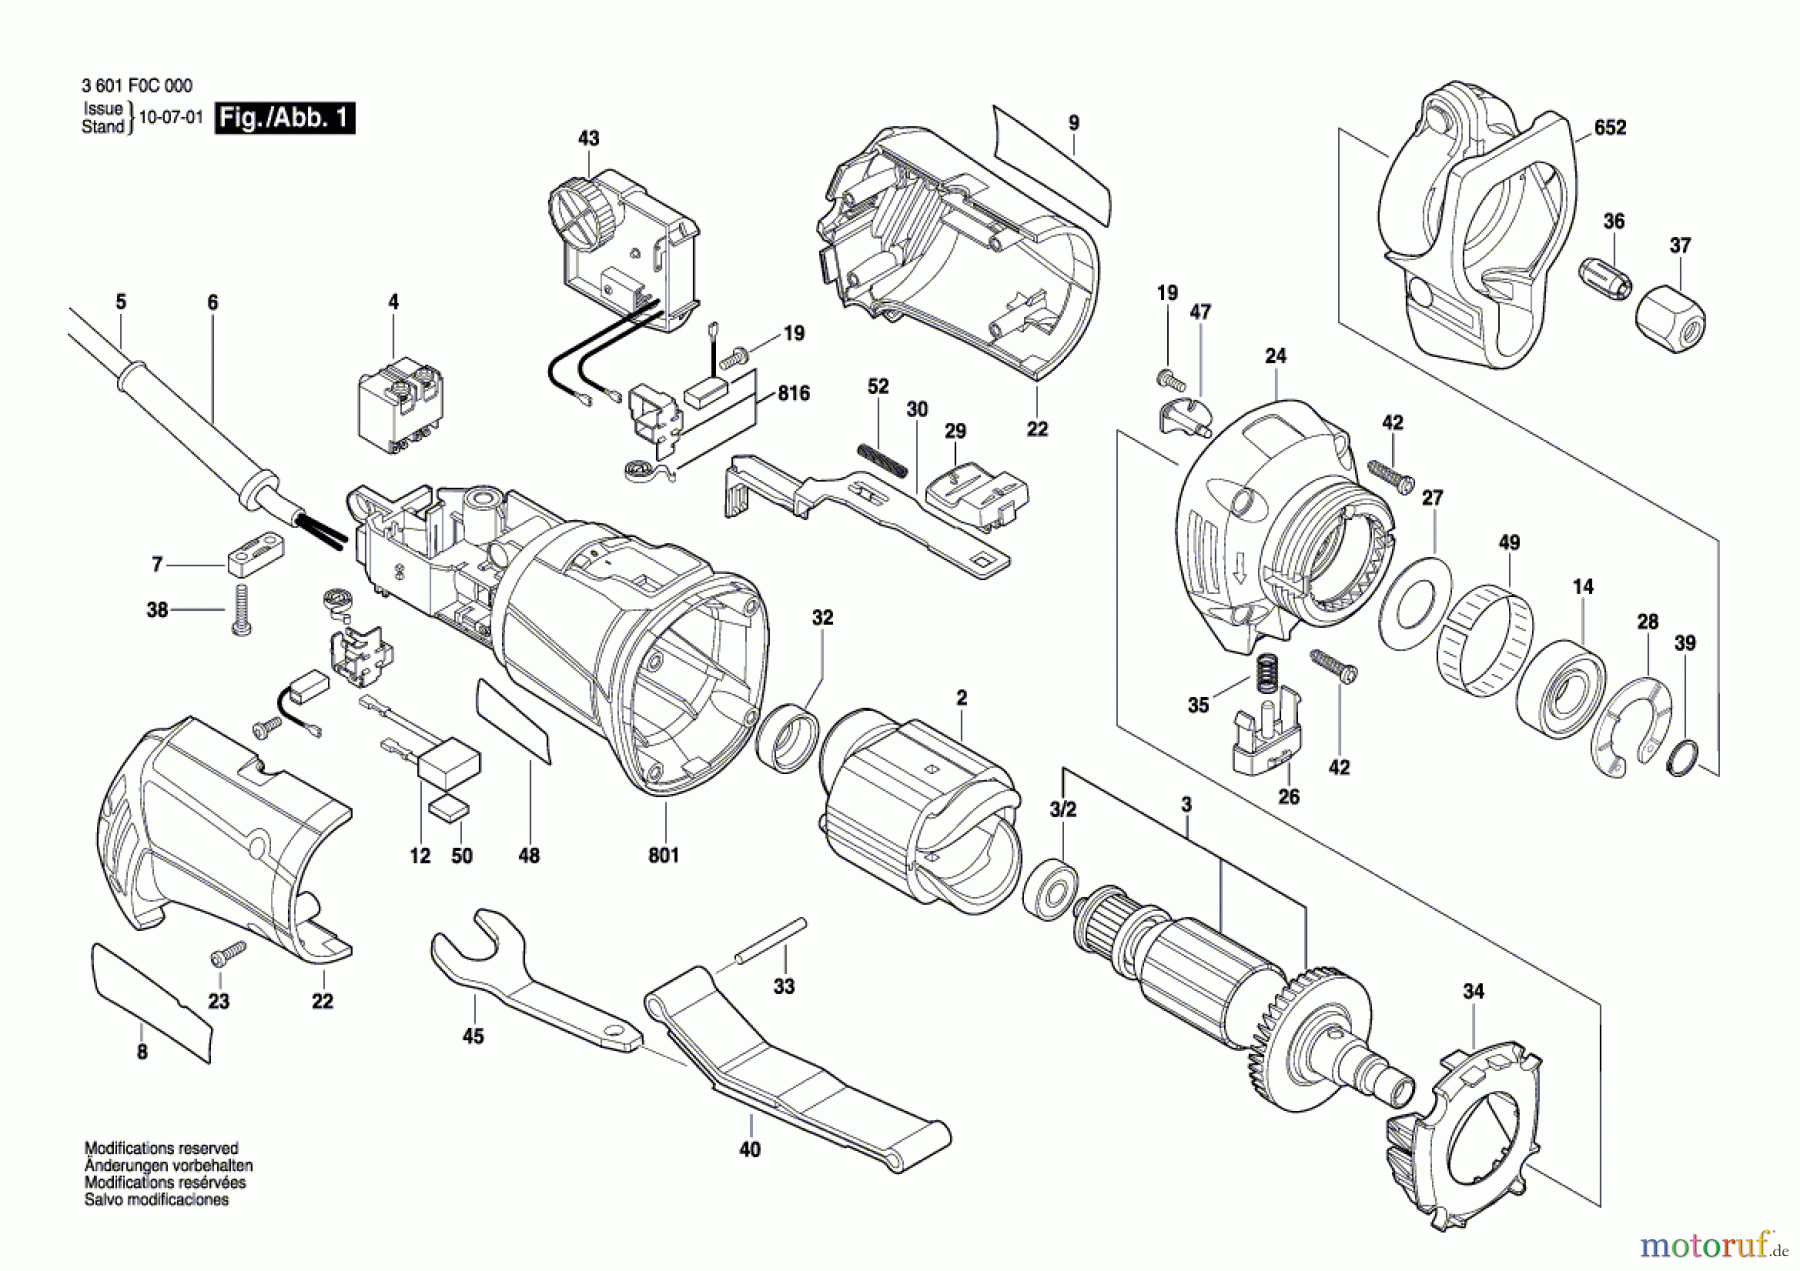  Bosch Werkzeug Oberfräse GTR 30 Seite 1